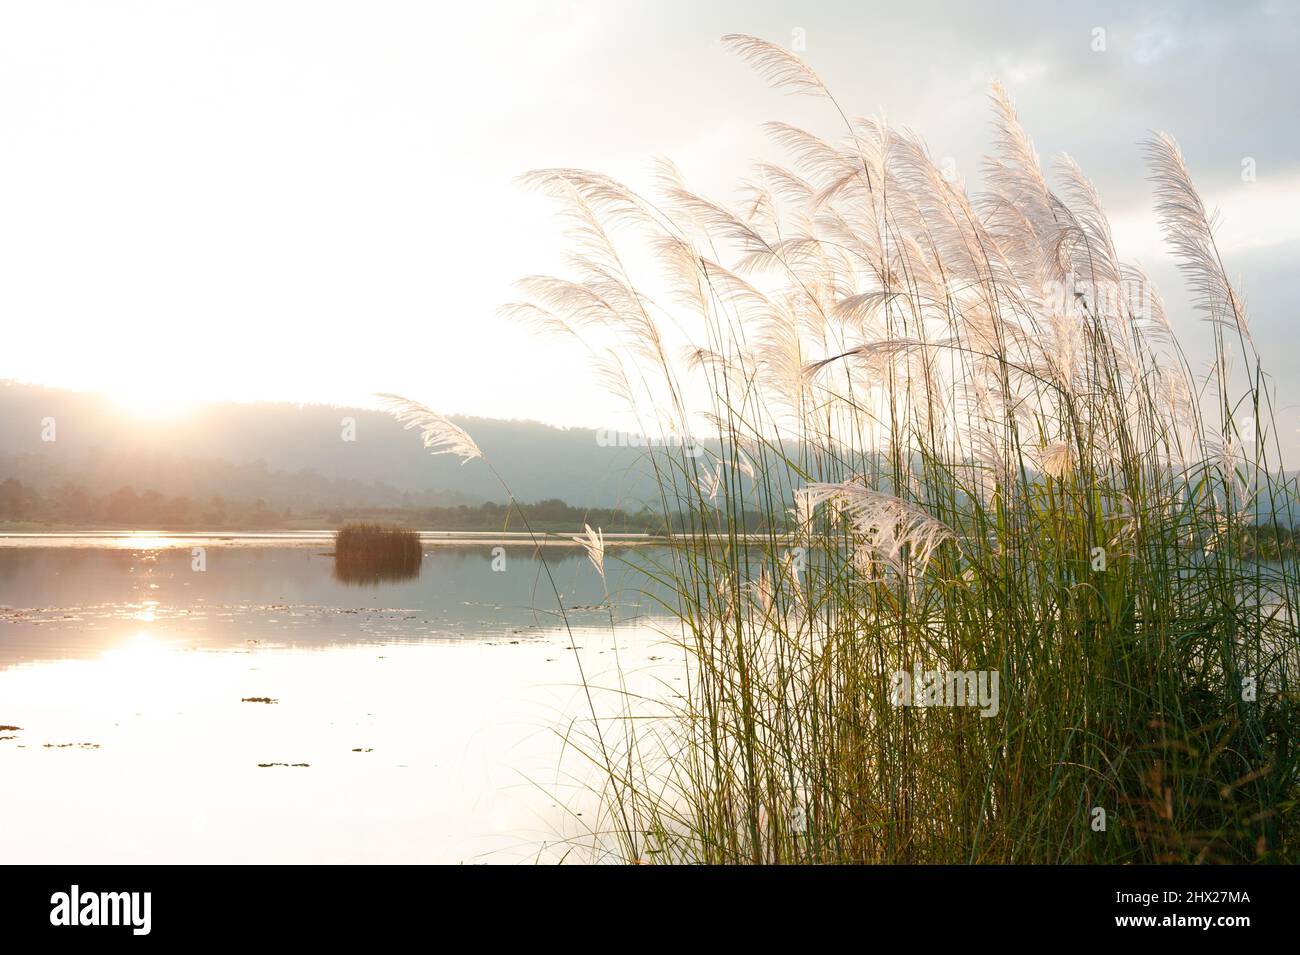 Fiori di canna o di canna in fiore presso un lago, montagne, e il tramonto del sole sullo sfondo. Foto Stock